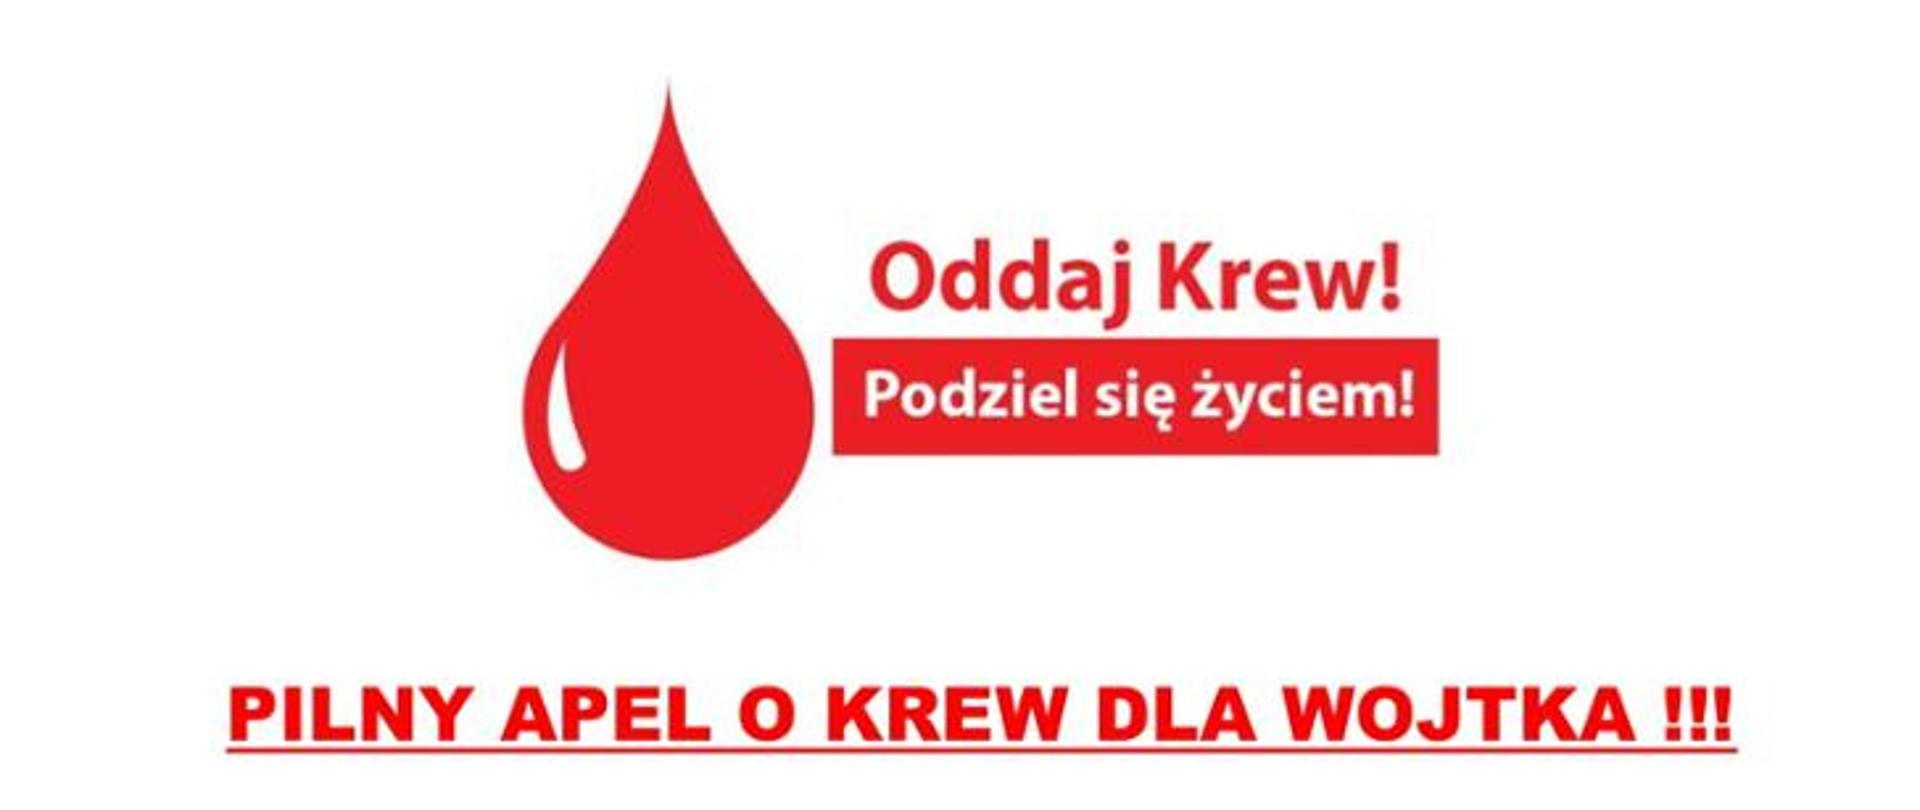 apel o oddawanie krwi dla strażaka Wojtka Opali